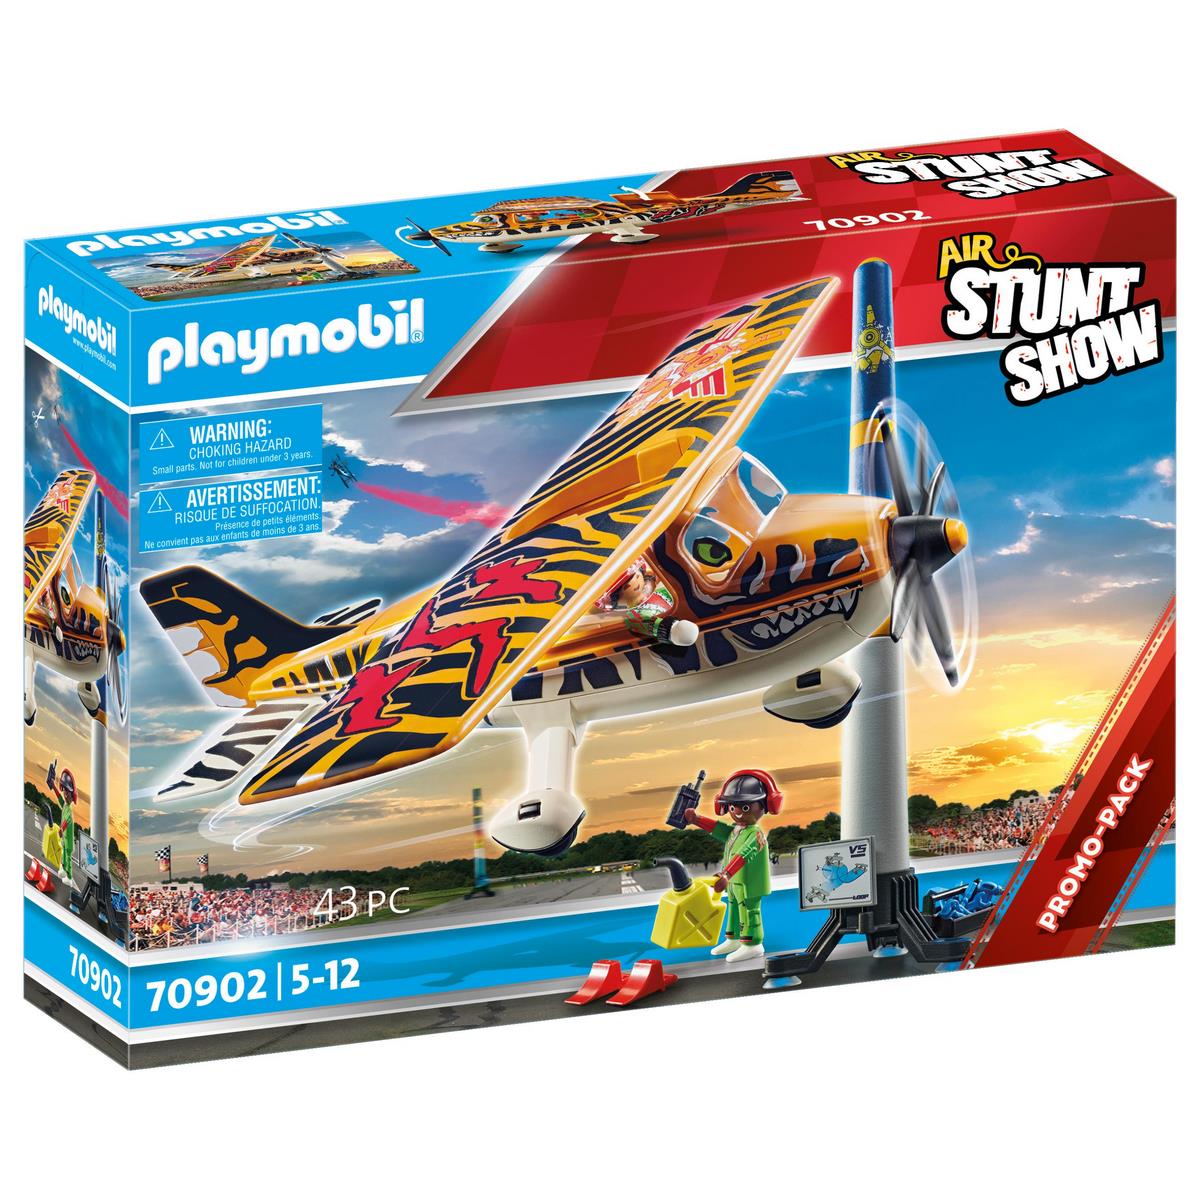 Playmobil 1.2.3 70185 Avion avec pilote et vacancière - Playmobil